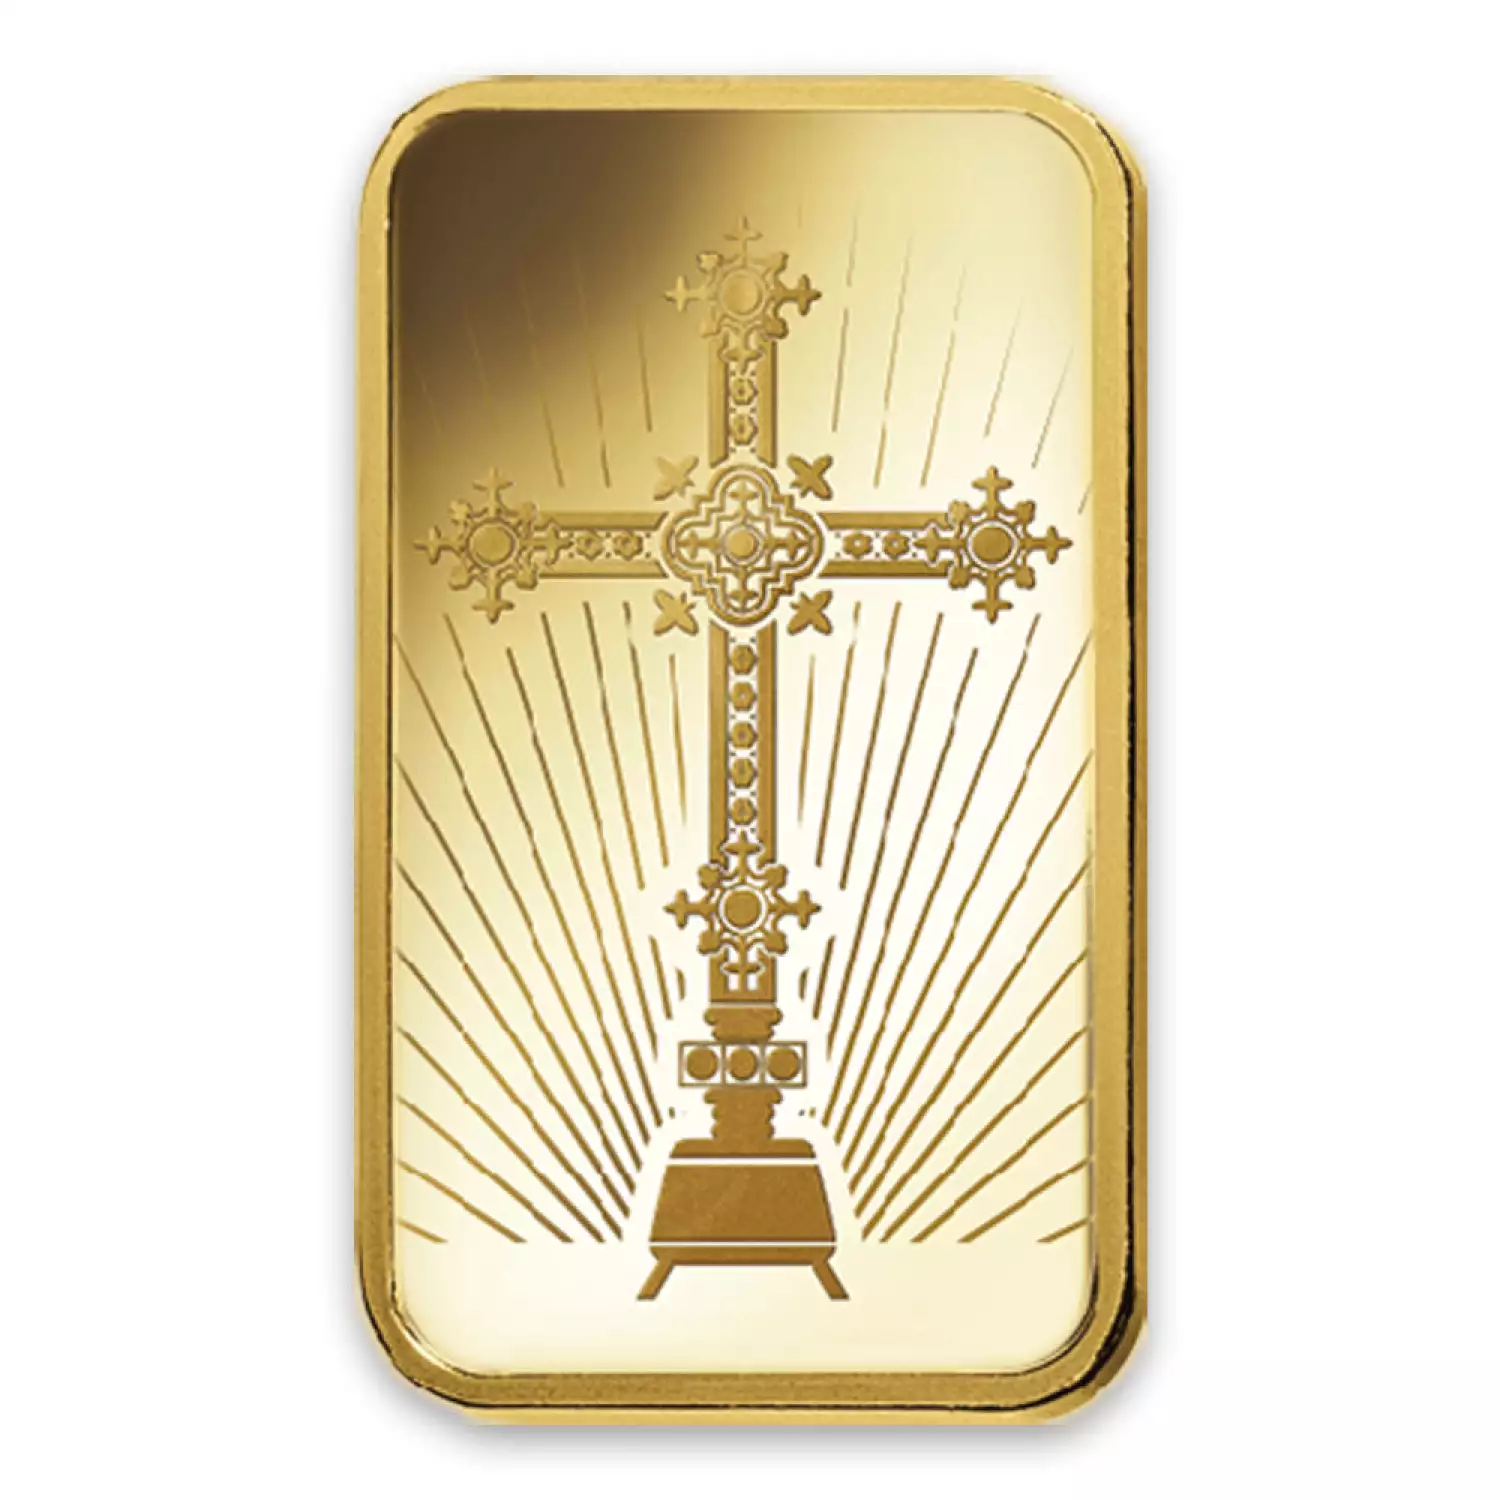 5g PAMP Gold Bar - Romanesque Cross (2)